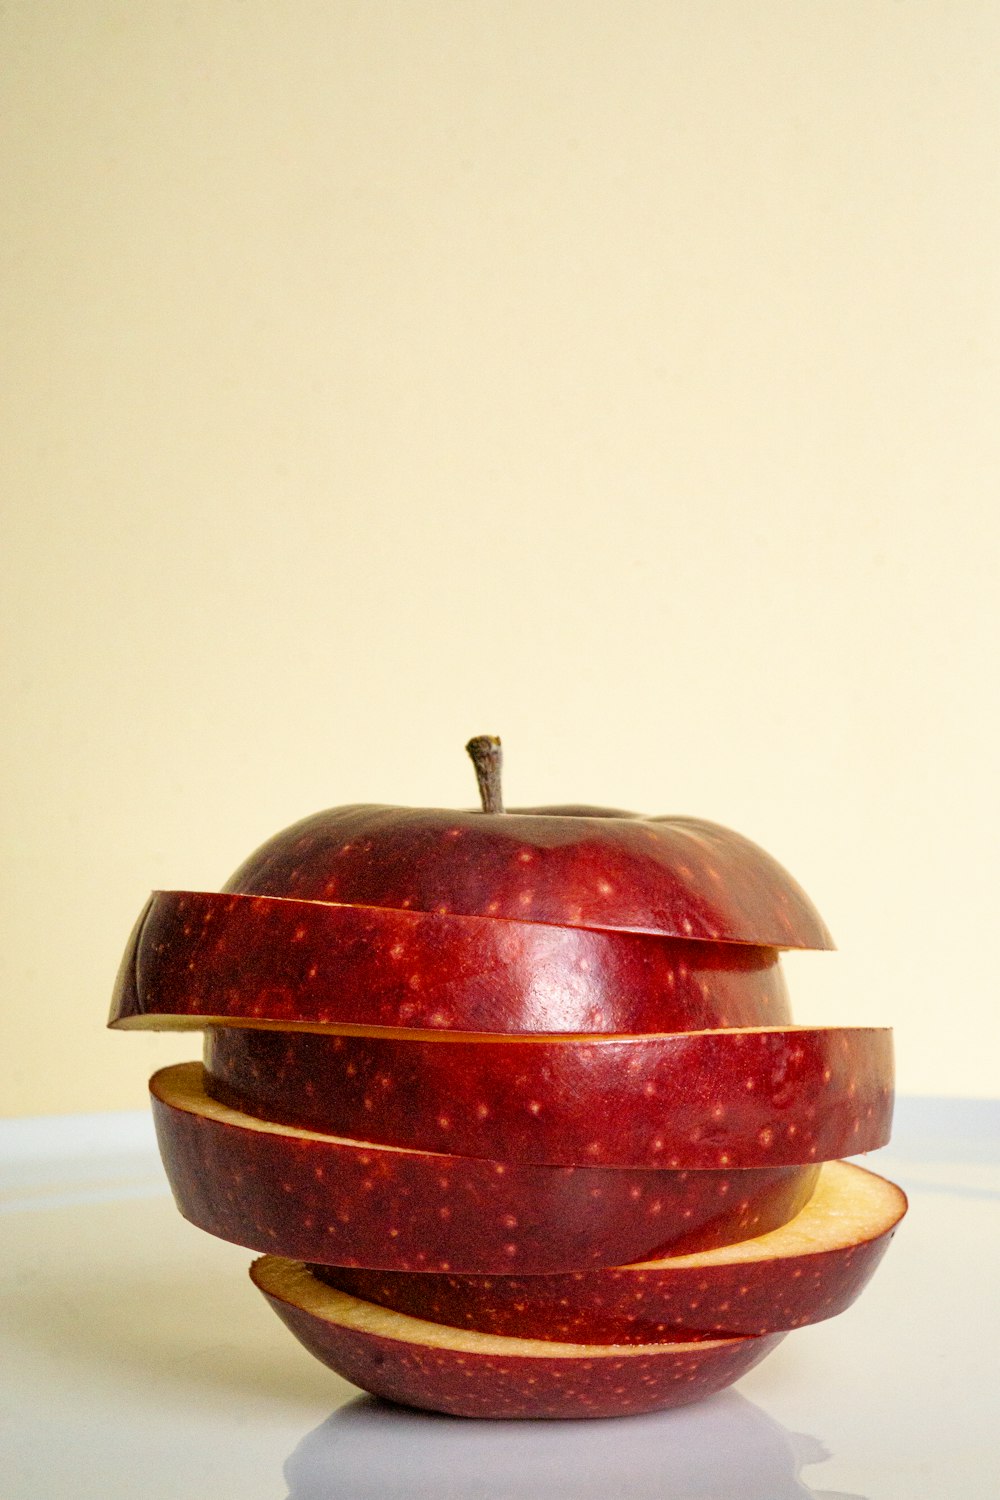 an apple sliced in half on a table